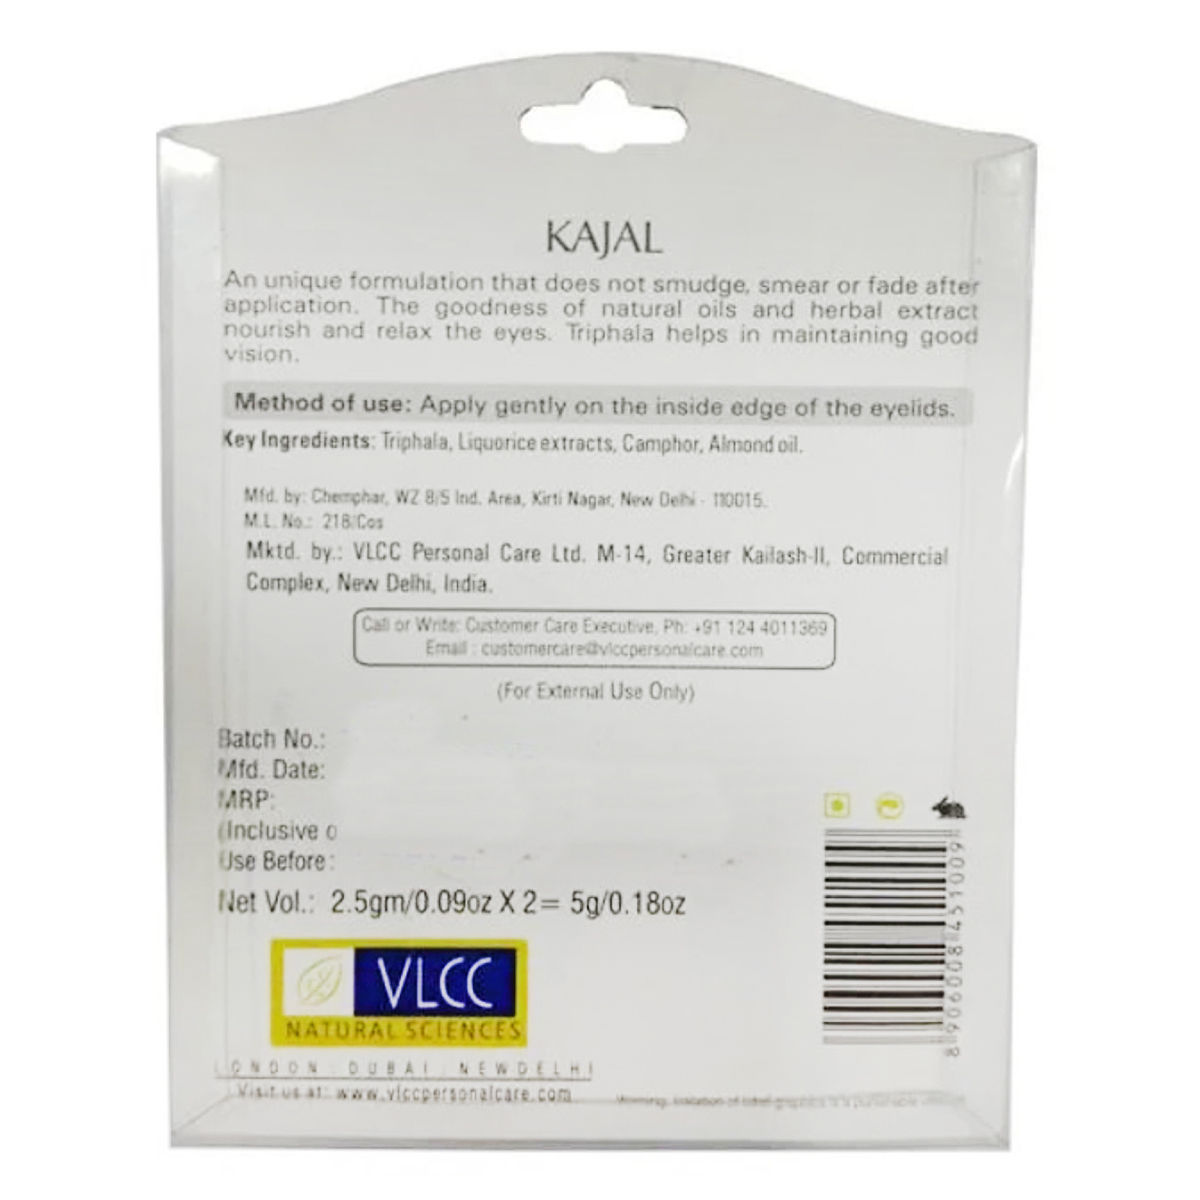 VLCC Kajal, 2.5 gm ( Buy 1 Get 1 Free ), Pack of 1 